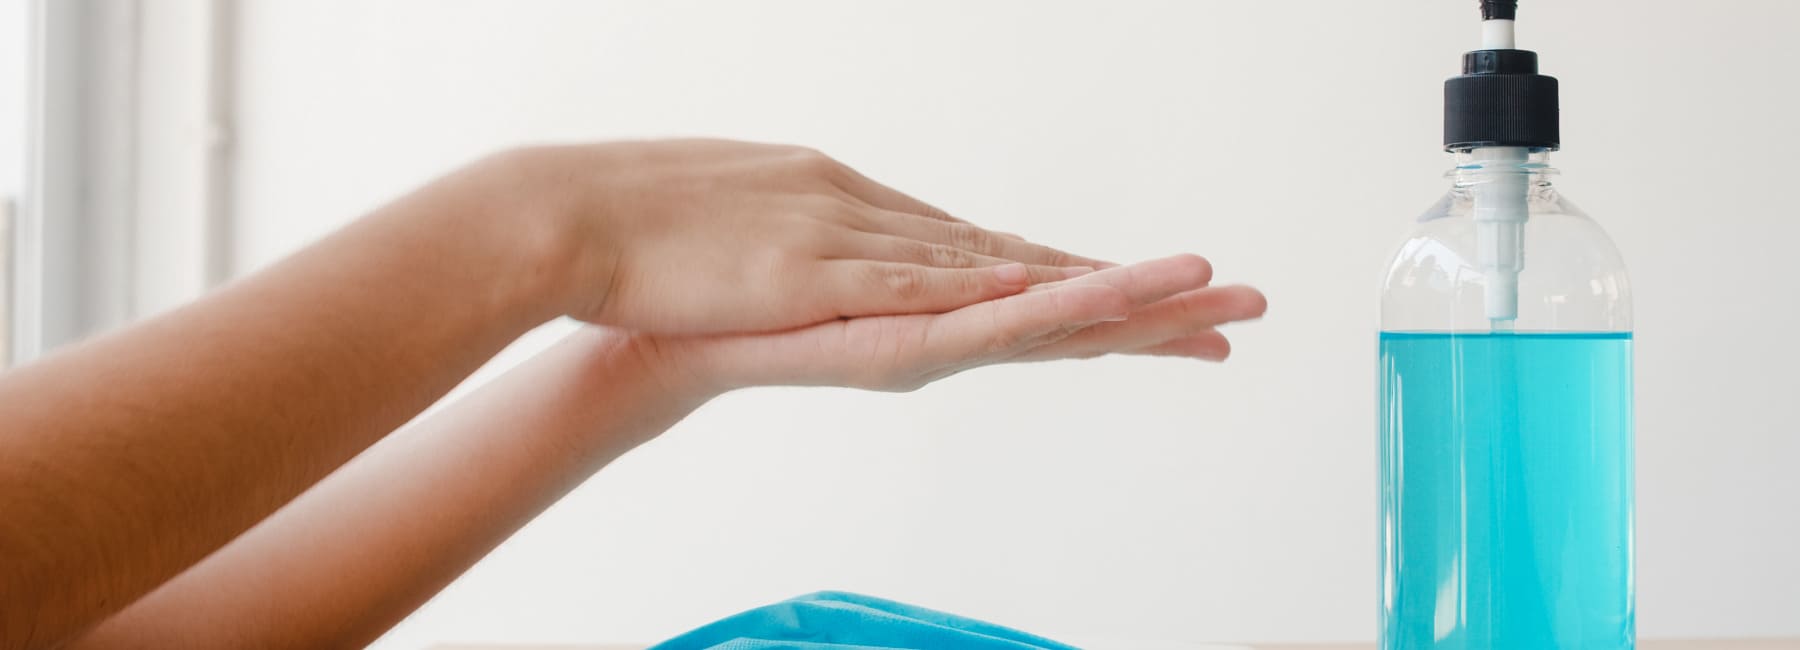 Как правильно обрабатывать руки антисептиком?